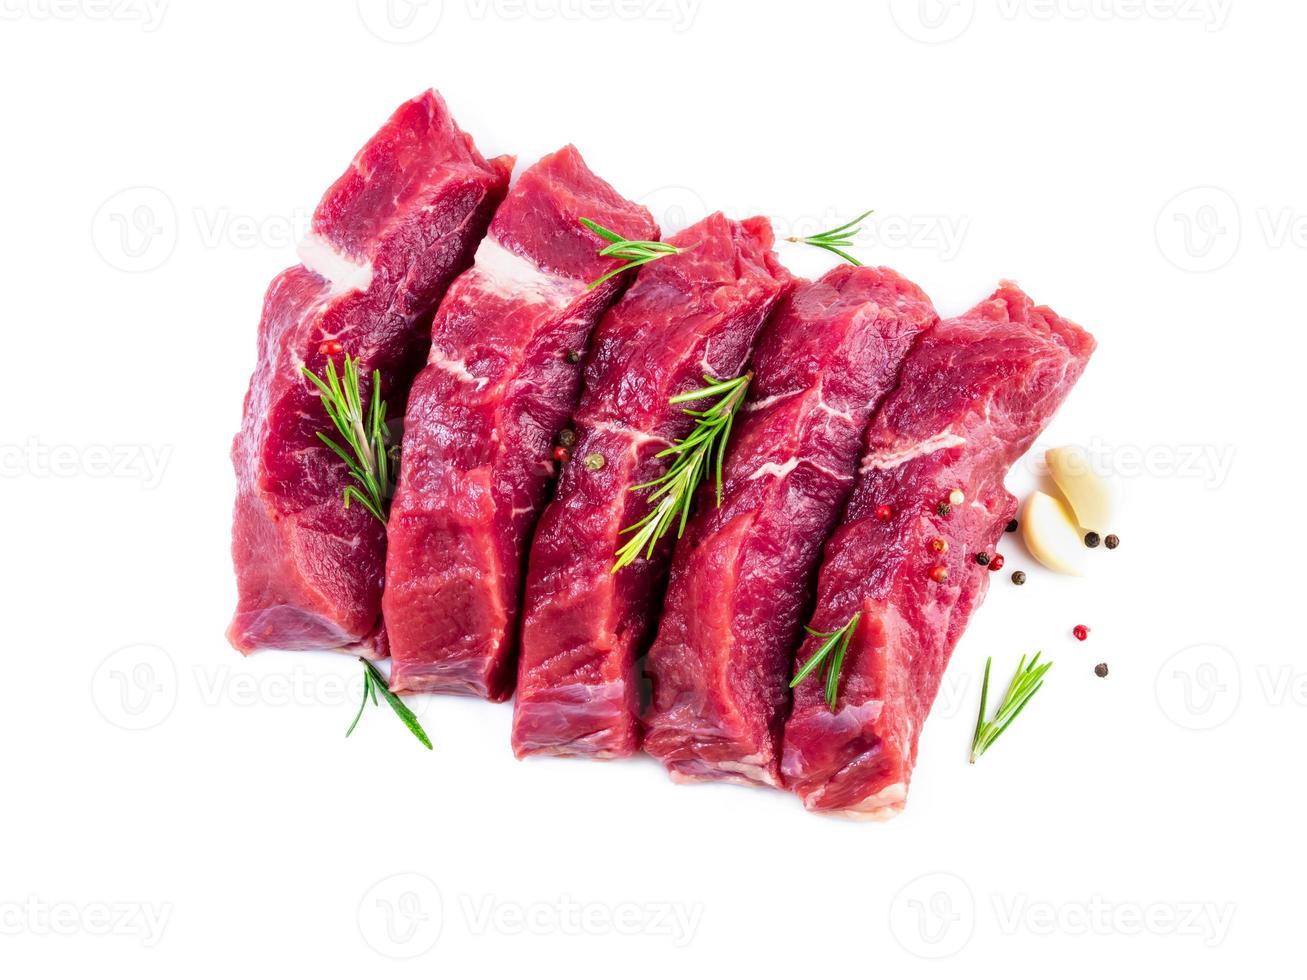 rohes Fleisch, Rindersteak mit Gewürzen auf weißem Hintergrund, Draufsicht foto